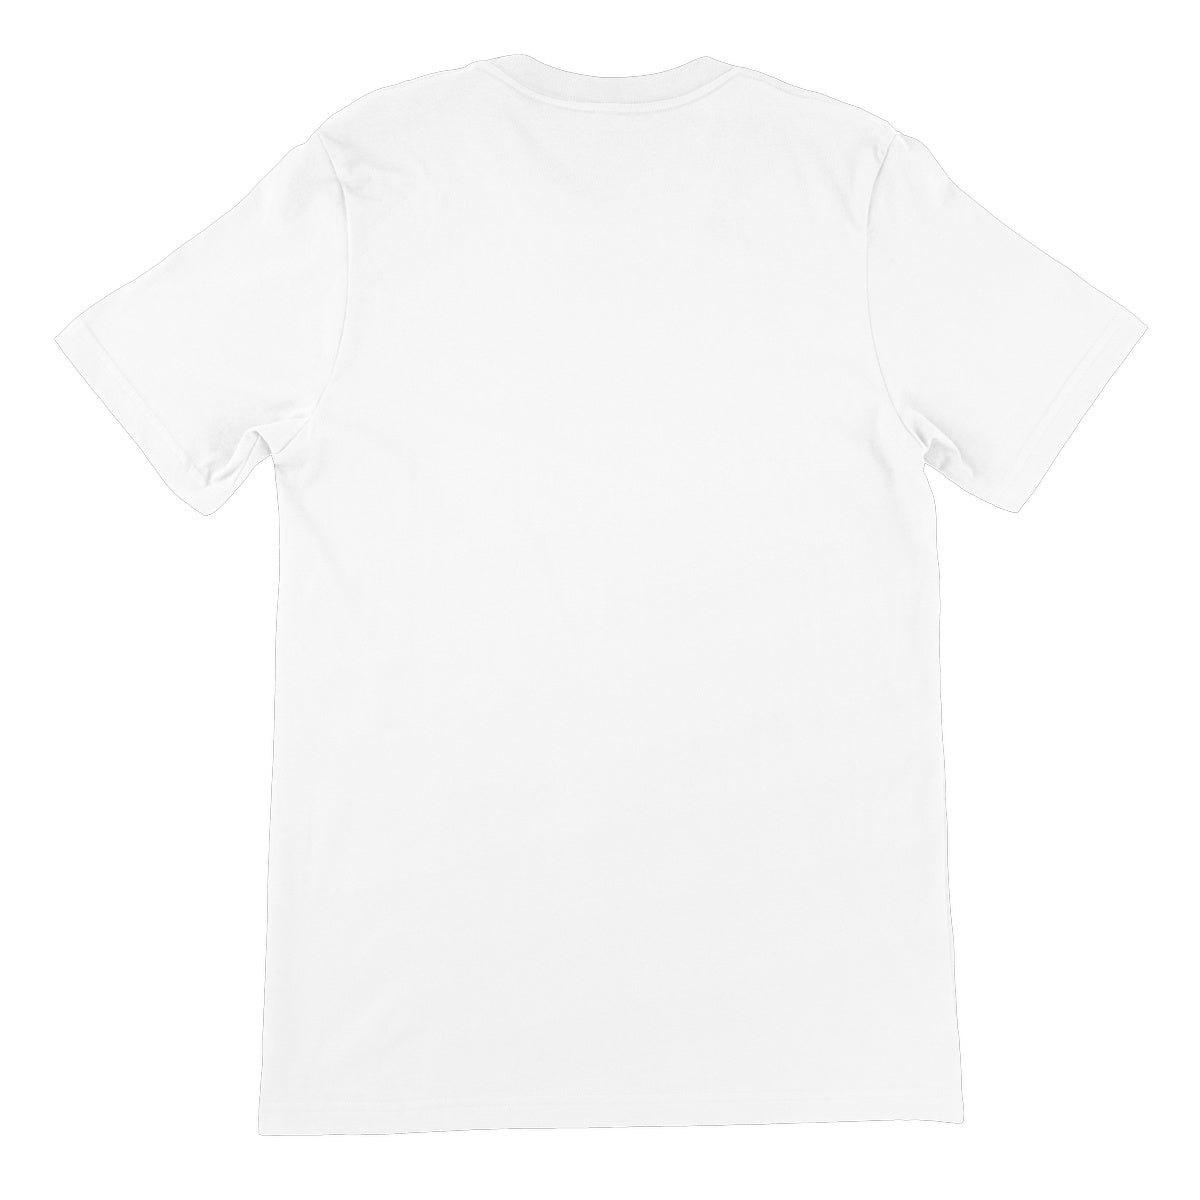 Joker Illustrated Unisex Short Sleeve T-Shirt